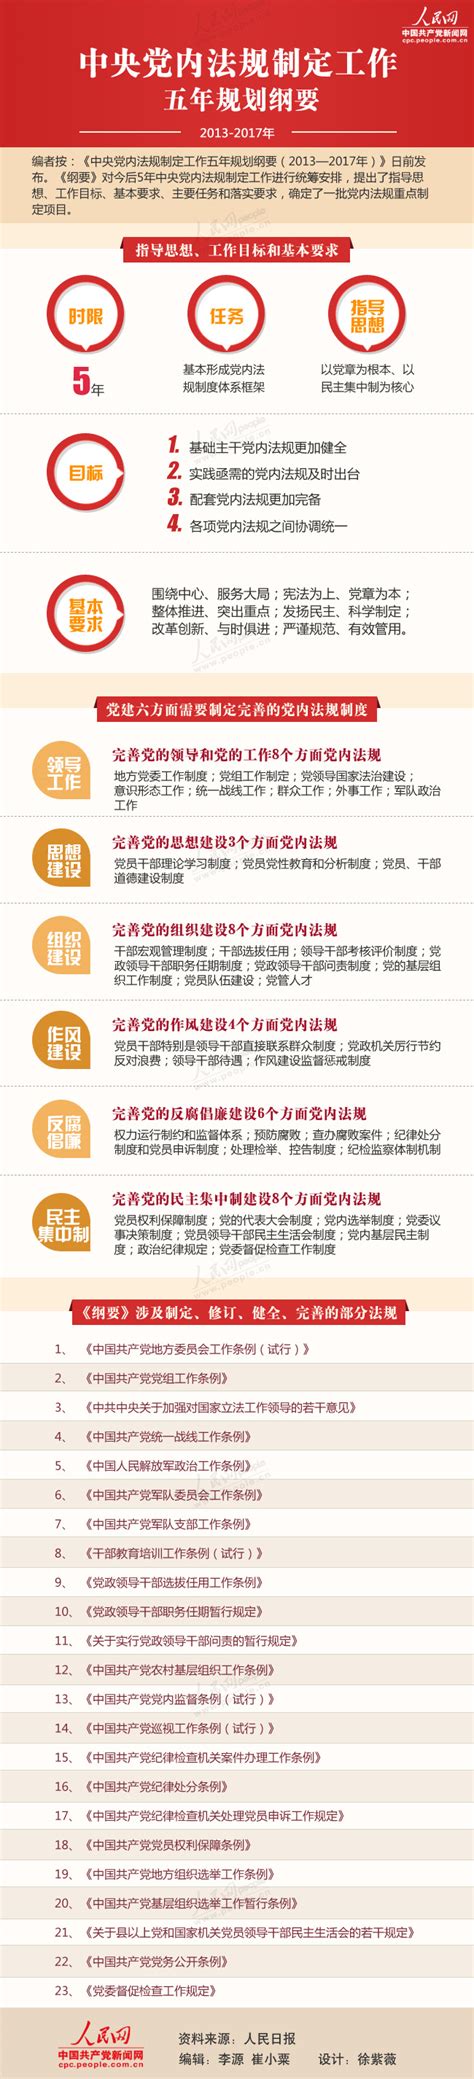 图解中央党内法规制定工作五年规划纲要--独家稿件-人民网